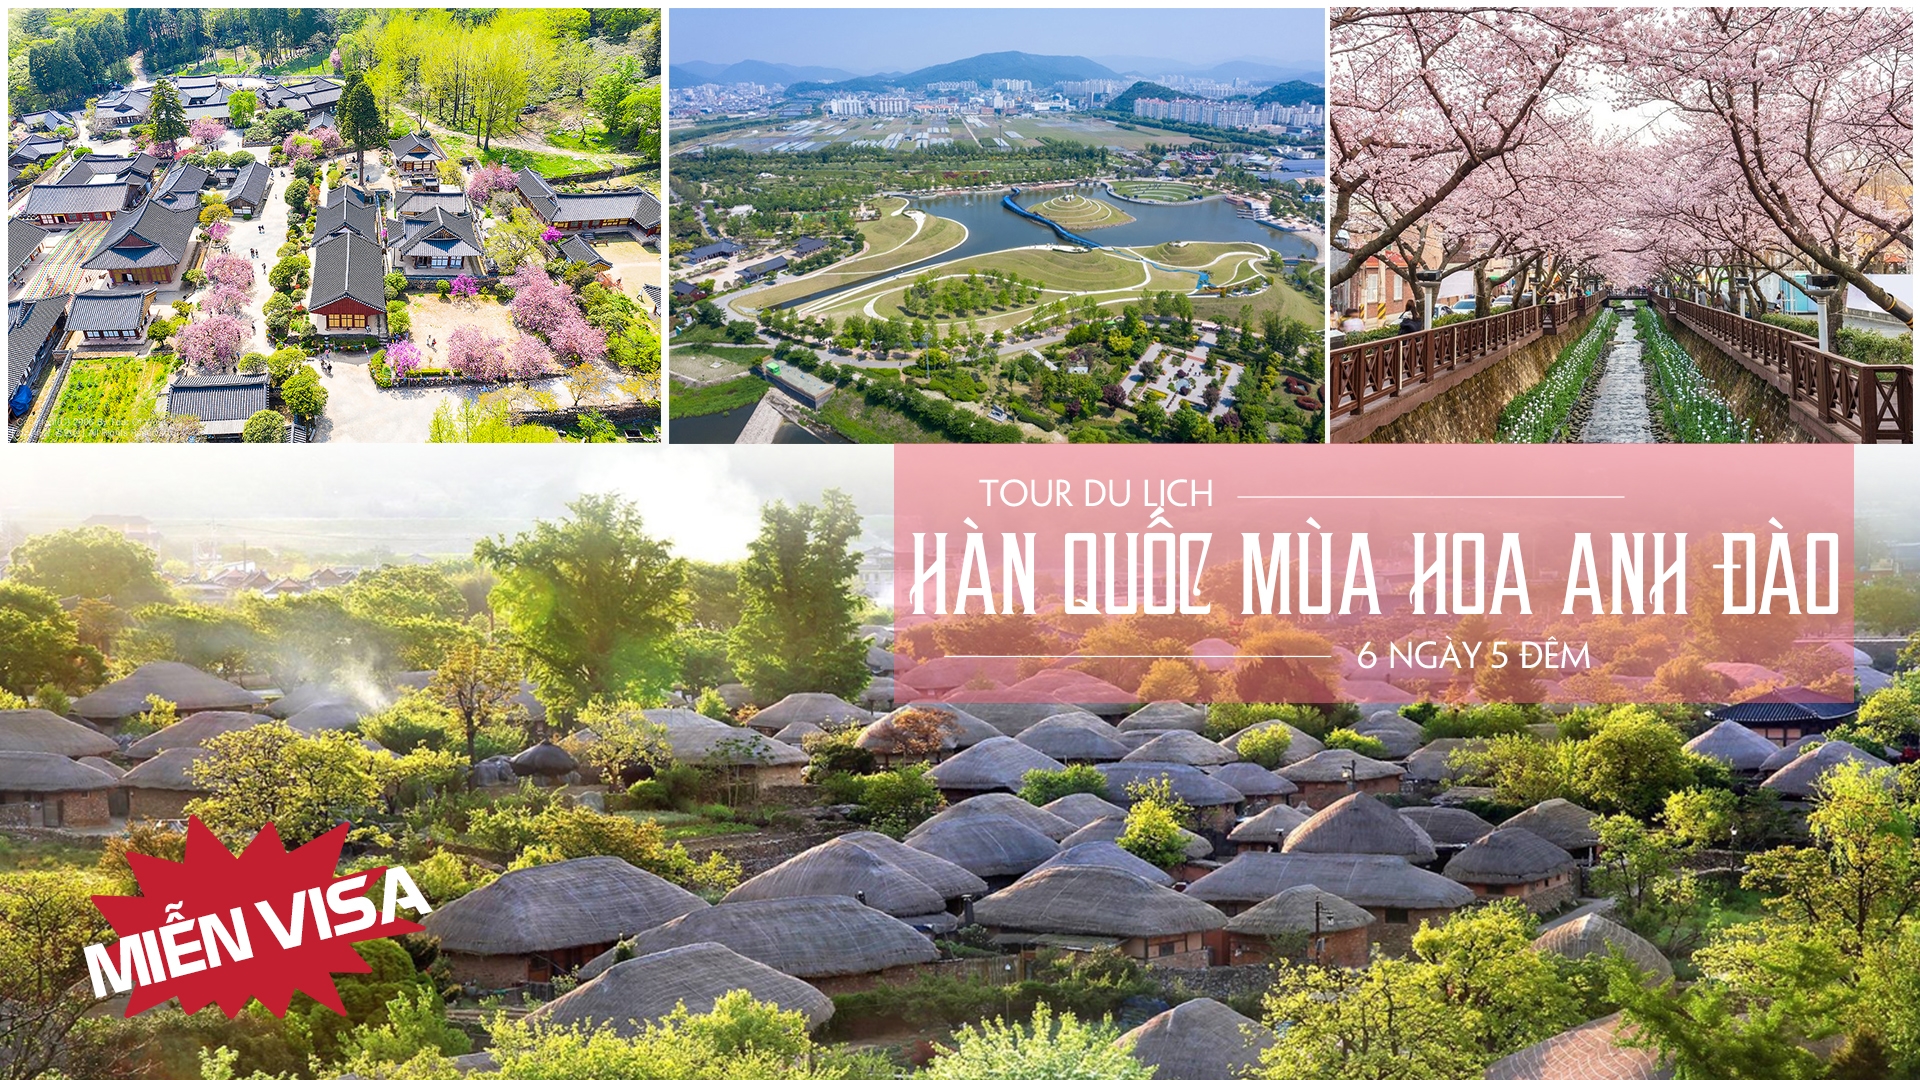 Du lịch Hàn Quốc ngắm hoa anh đào (Tour Miễn Visa)